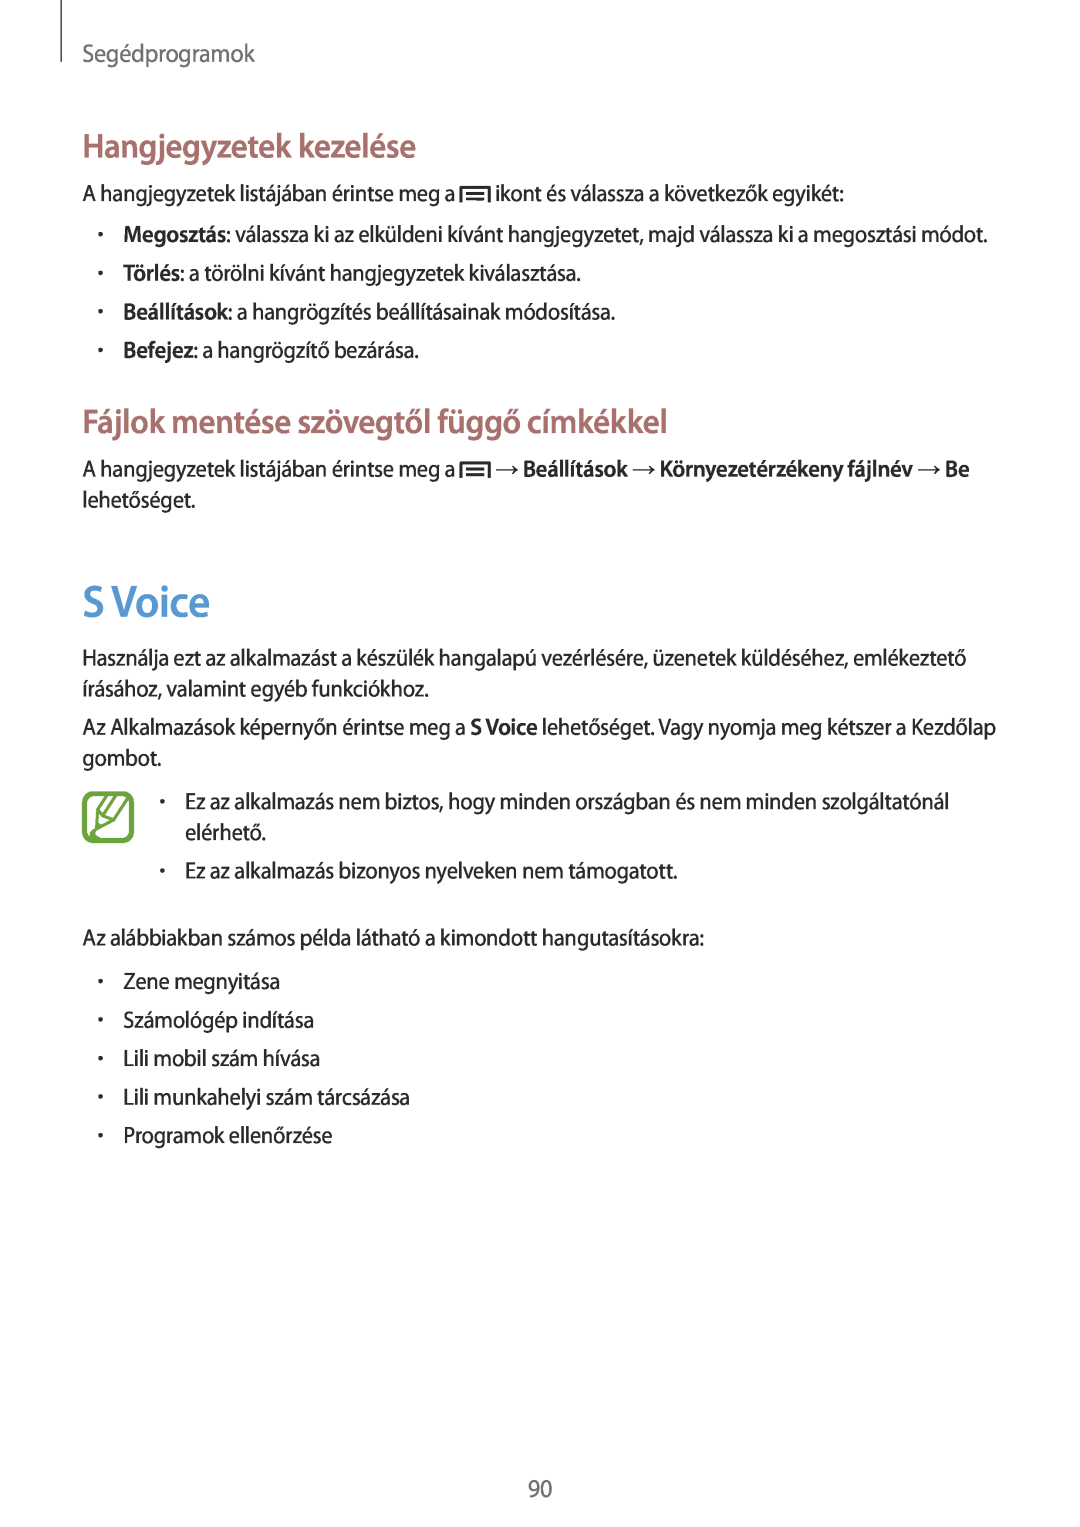 Samsung SM-G3815RWAVDH manual S Voice, Hangjegyzetek kezelése, Fájlok mentése szövegtől függő címkékkel, Segédprogramok 